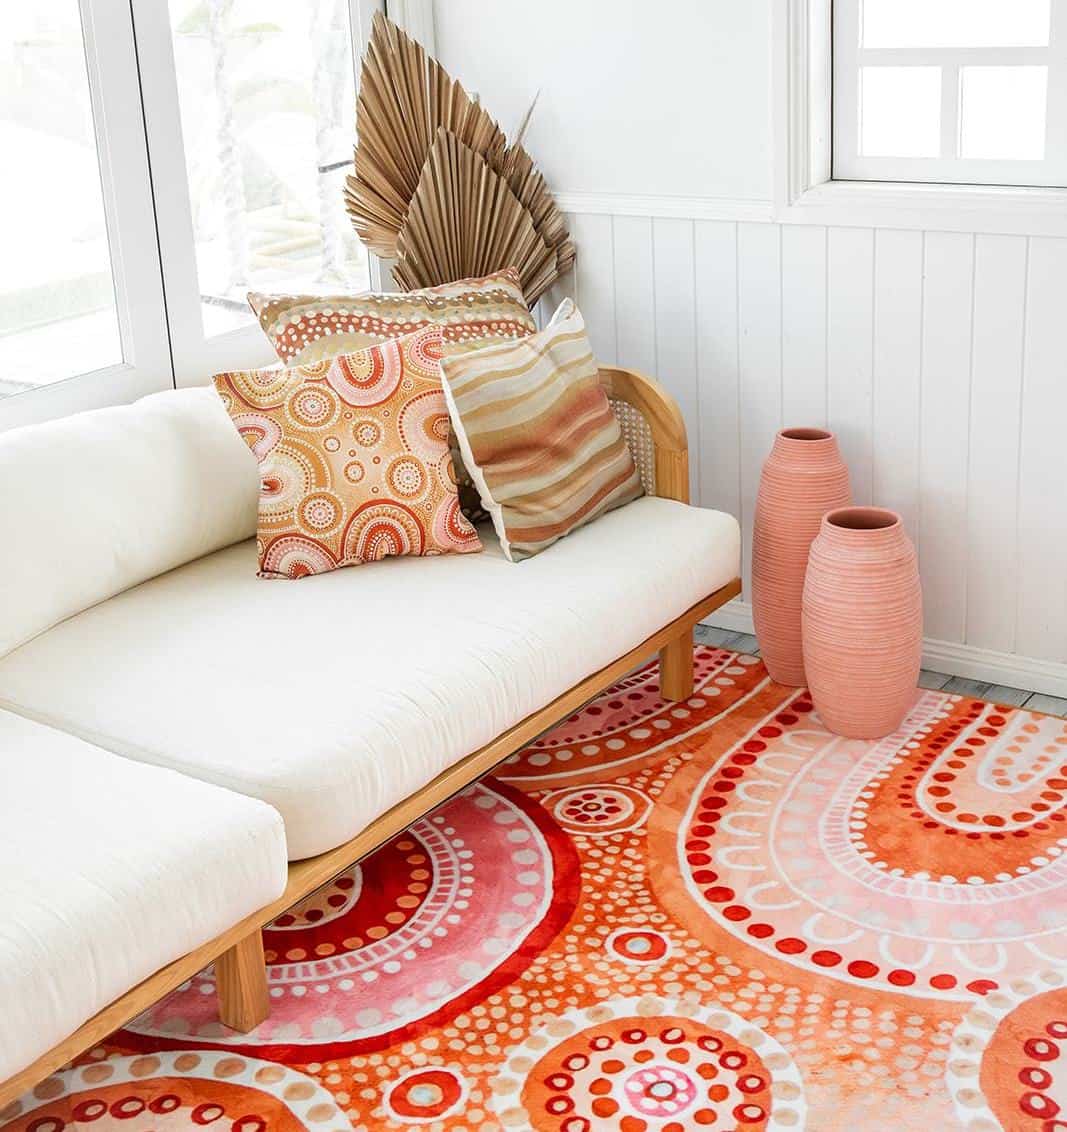 Emro designs rug by Bundjalung artist Holly Sanders